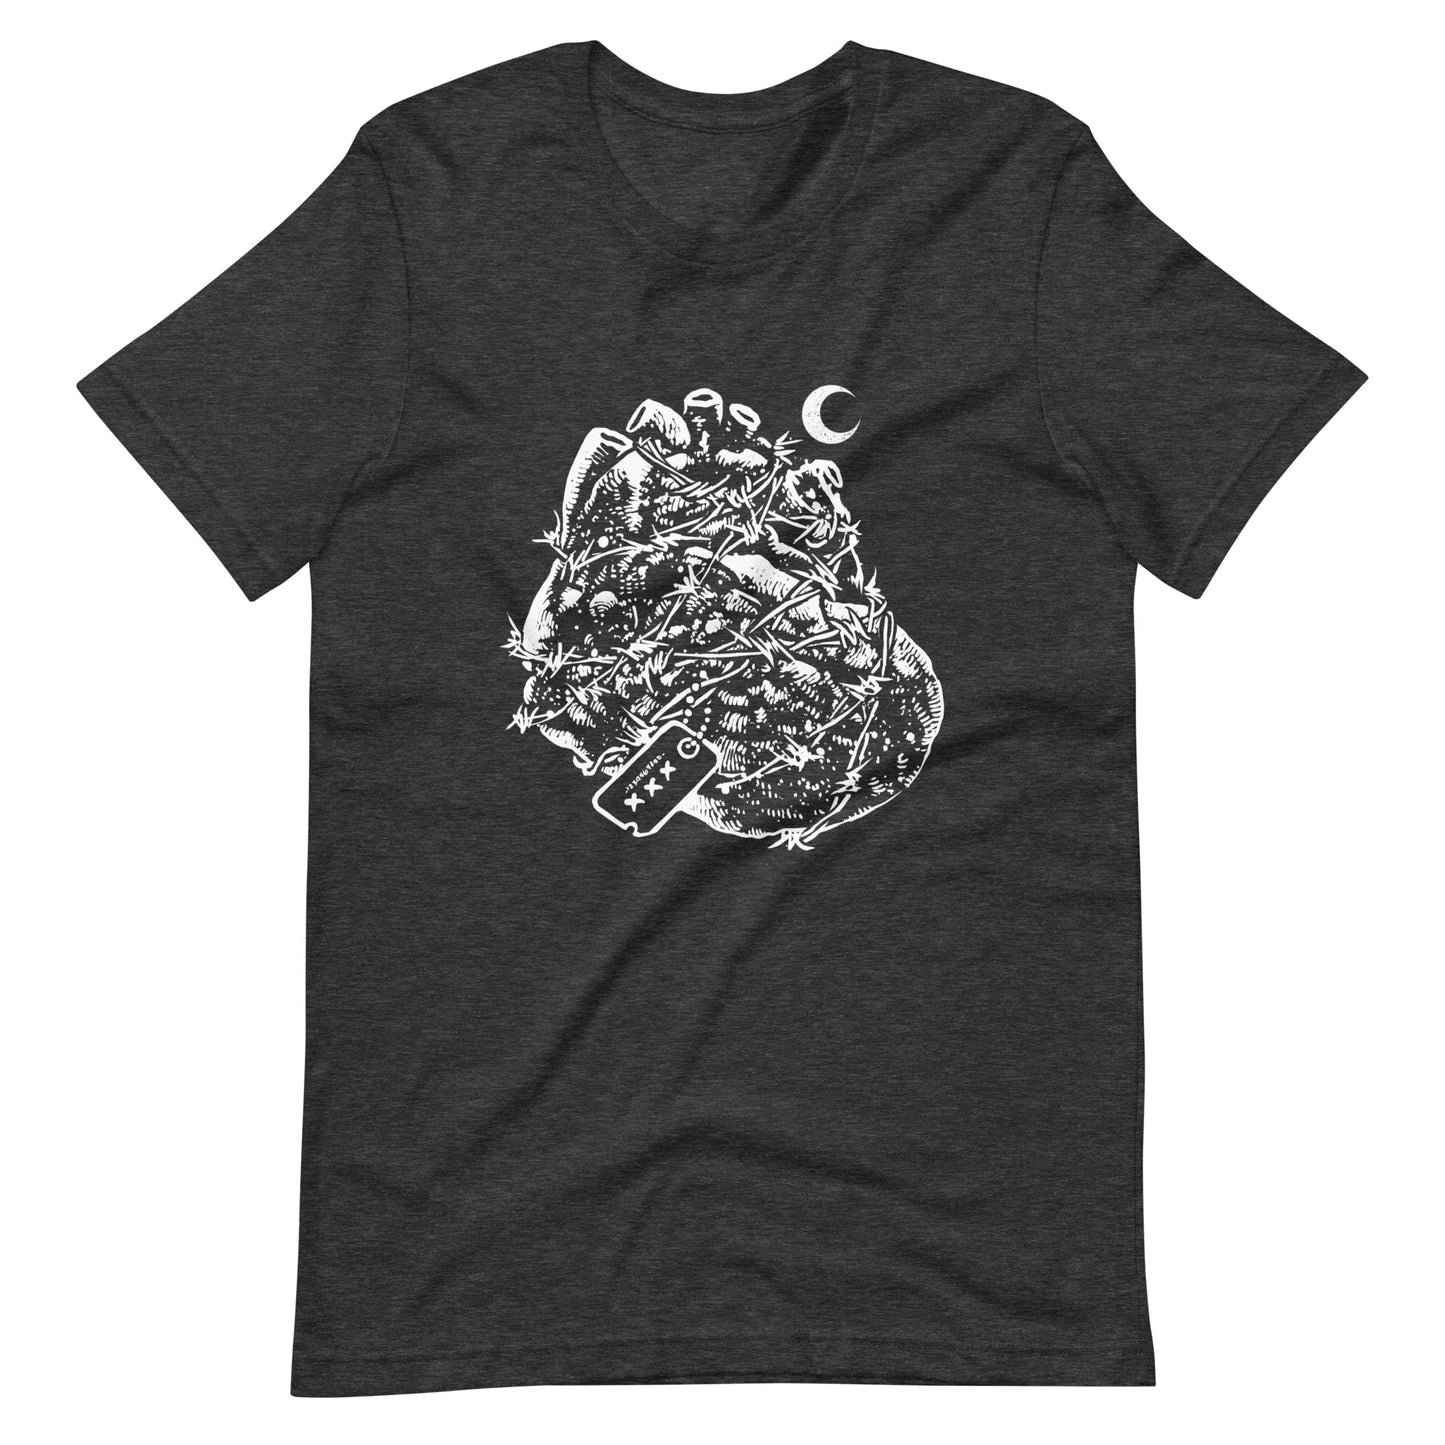 Heart Heroes - Men's t-shirt - Dark Grey Heather Front